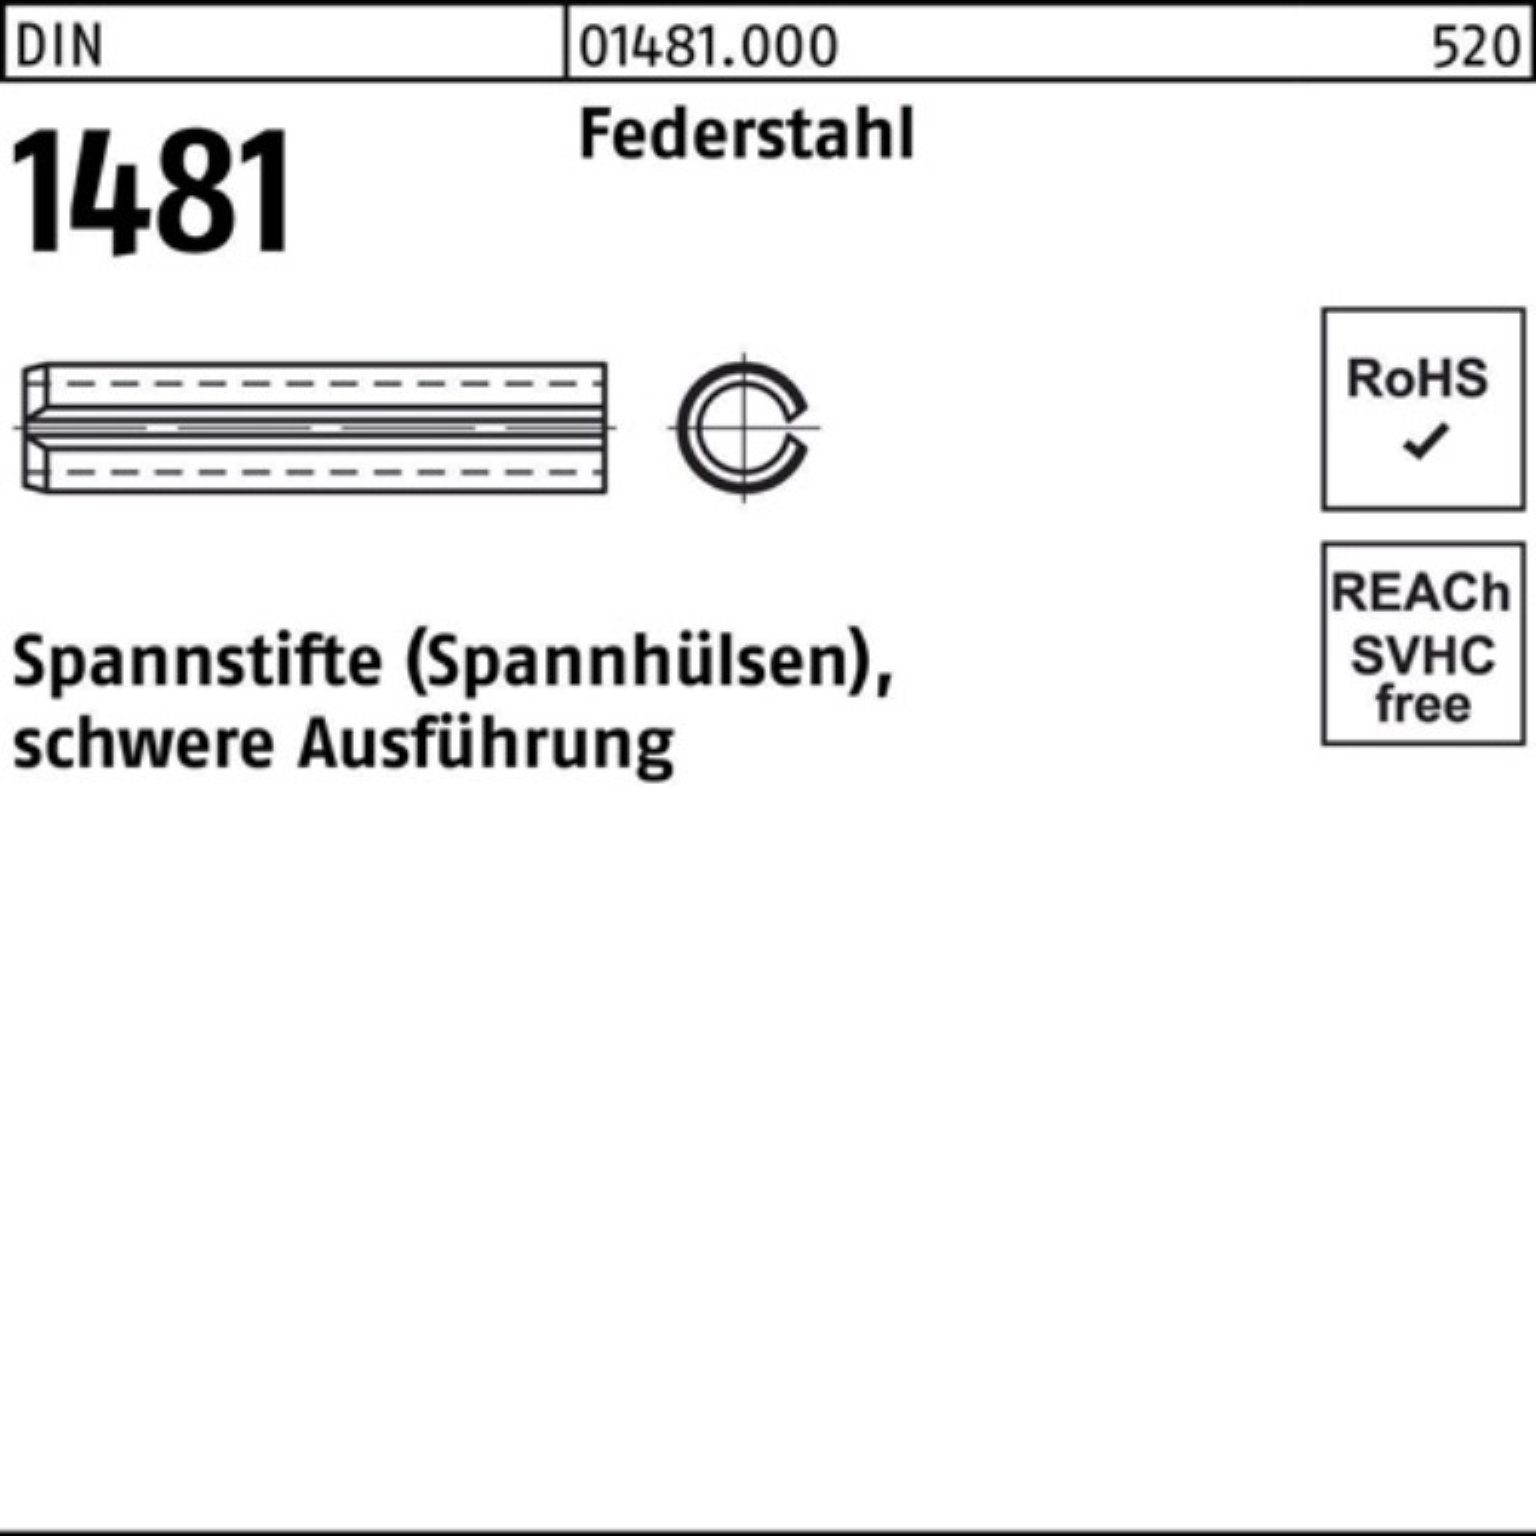 Reyher Spannstift 100er Pack Spannstift Federstahl 65 10x 1481 5 DIN schwere Ausführung